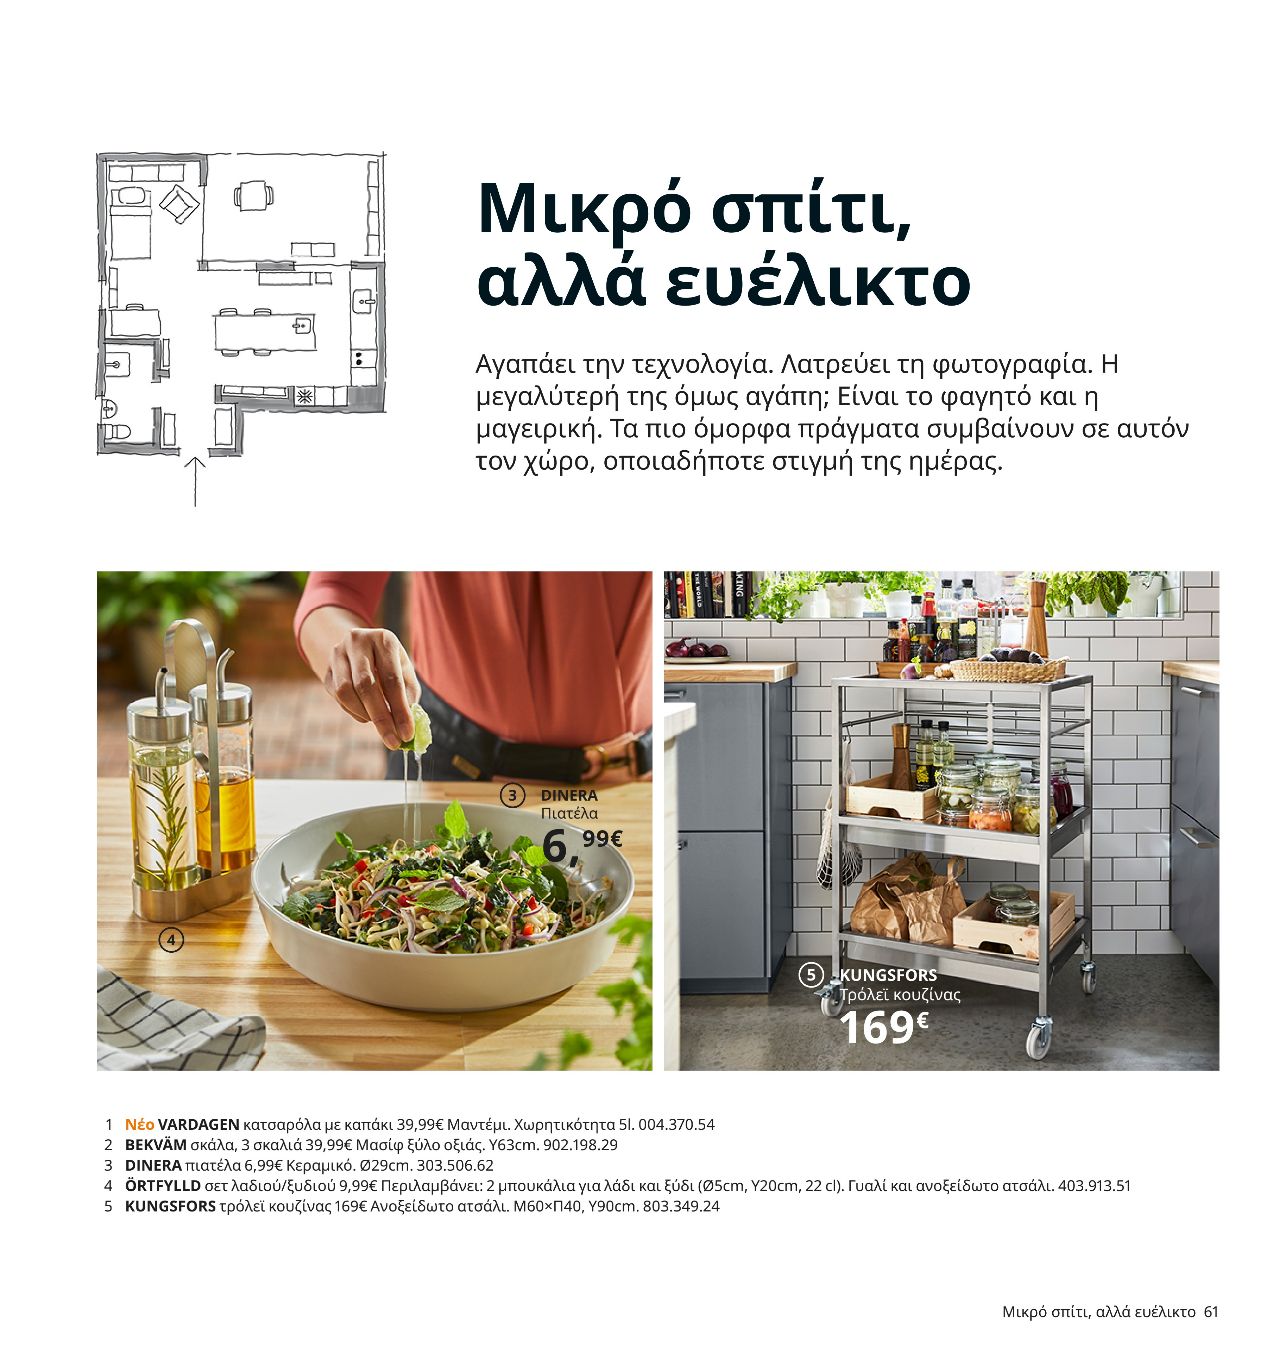 λαδόξυδο ortfylld τρόλεϊ κουζίνας kungsfors και πιατέλα dinera ikea 2021 κατάλογος σελίδα 61